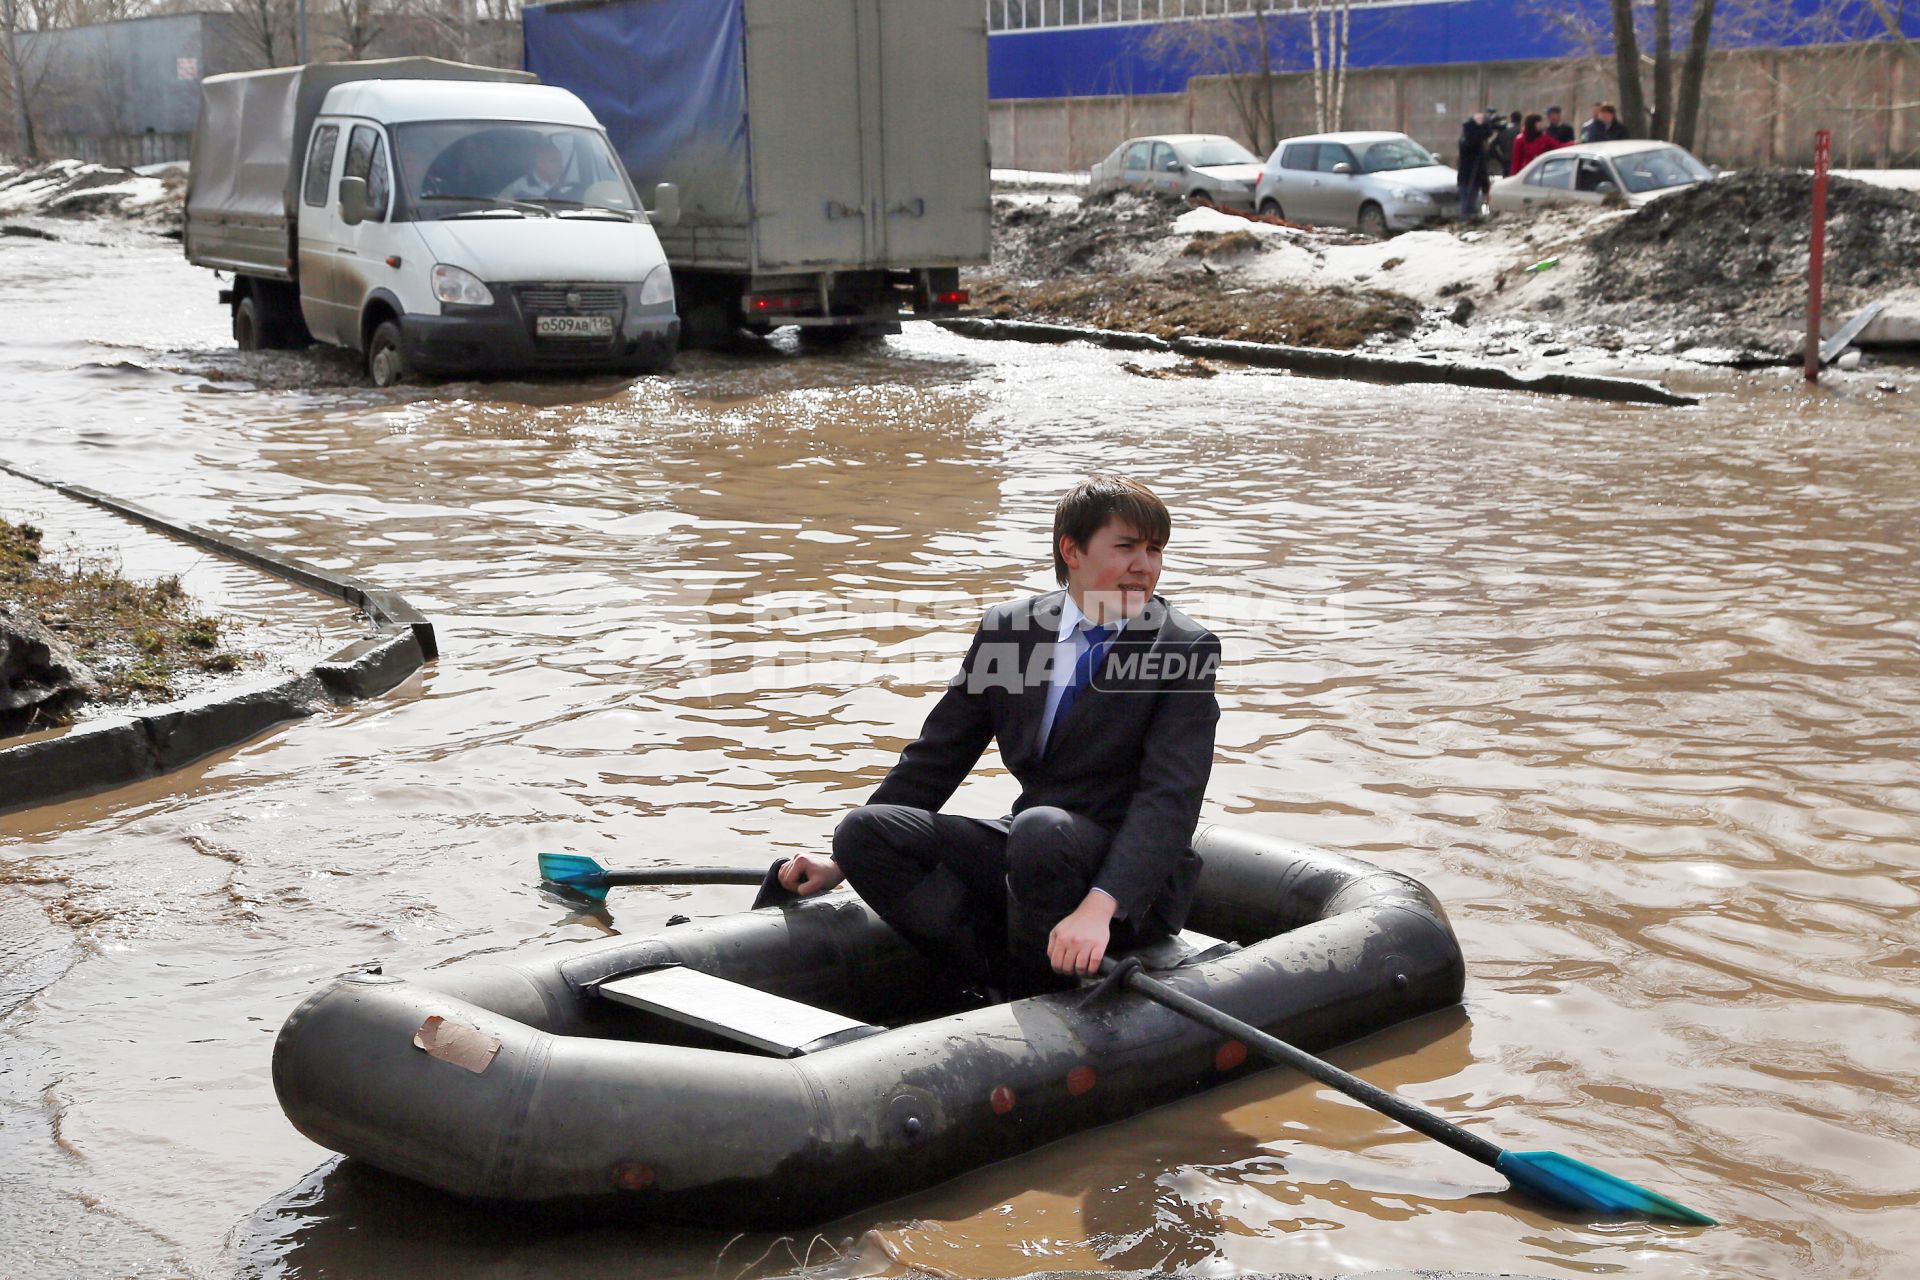 Из-за быстрого таяния снегов весенние паводковые воды затопили проезжую часть на улицах. На снимке: мужчина на резиновой лодке на затопленной улице.